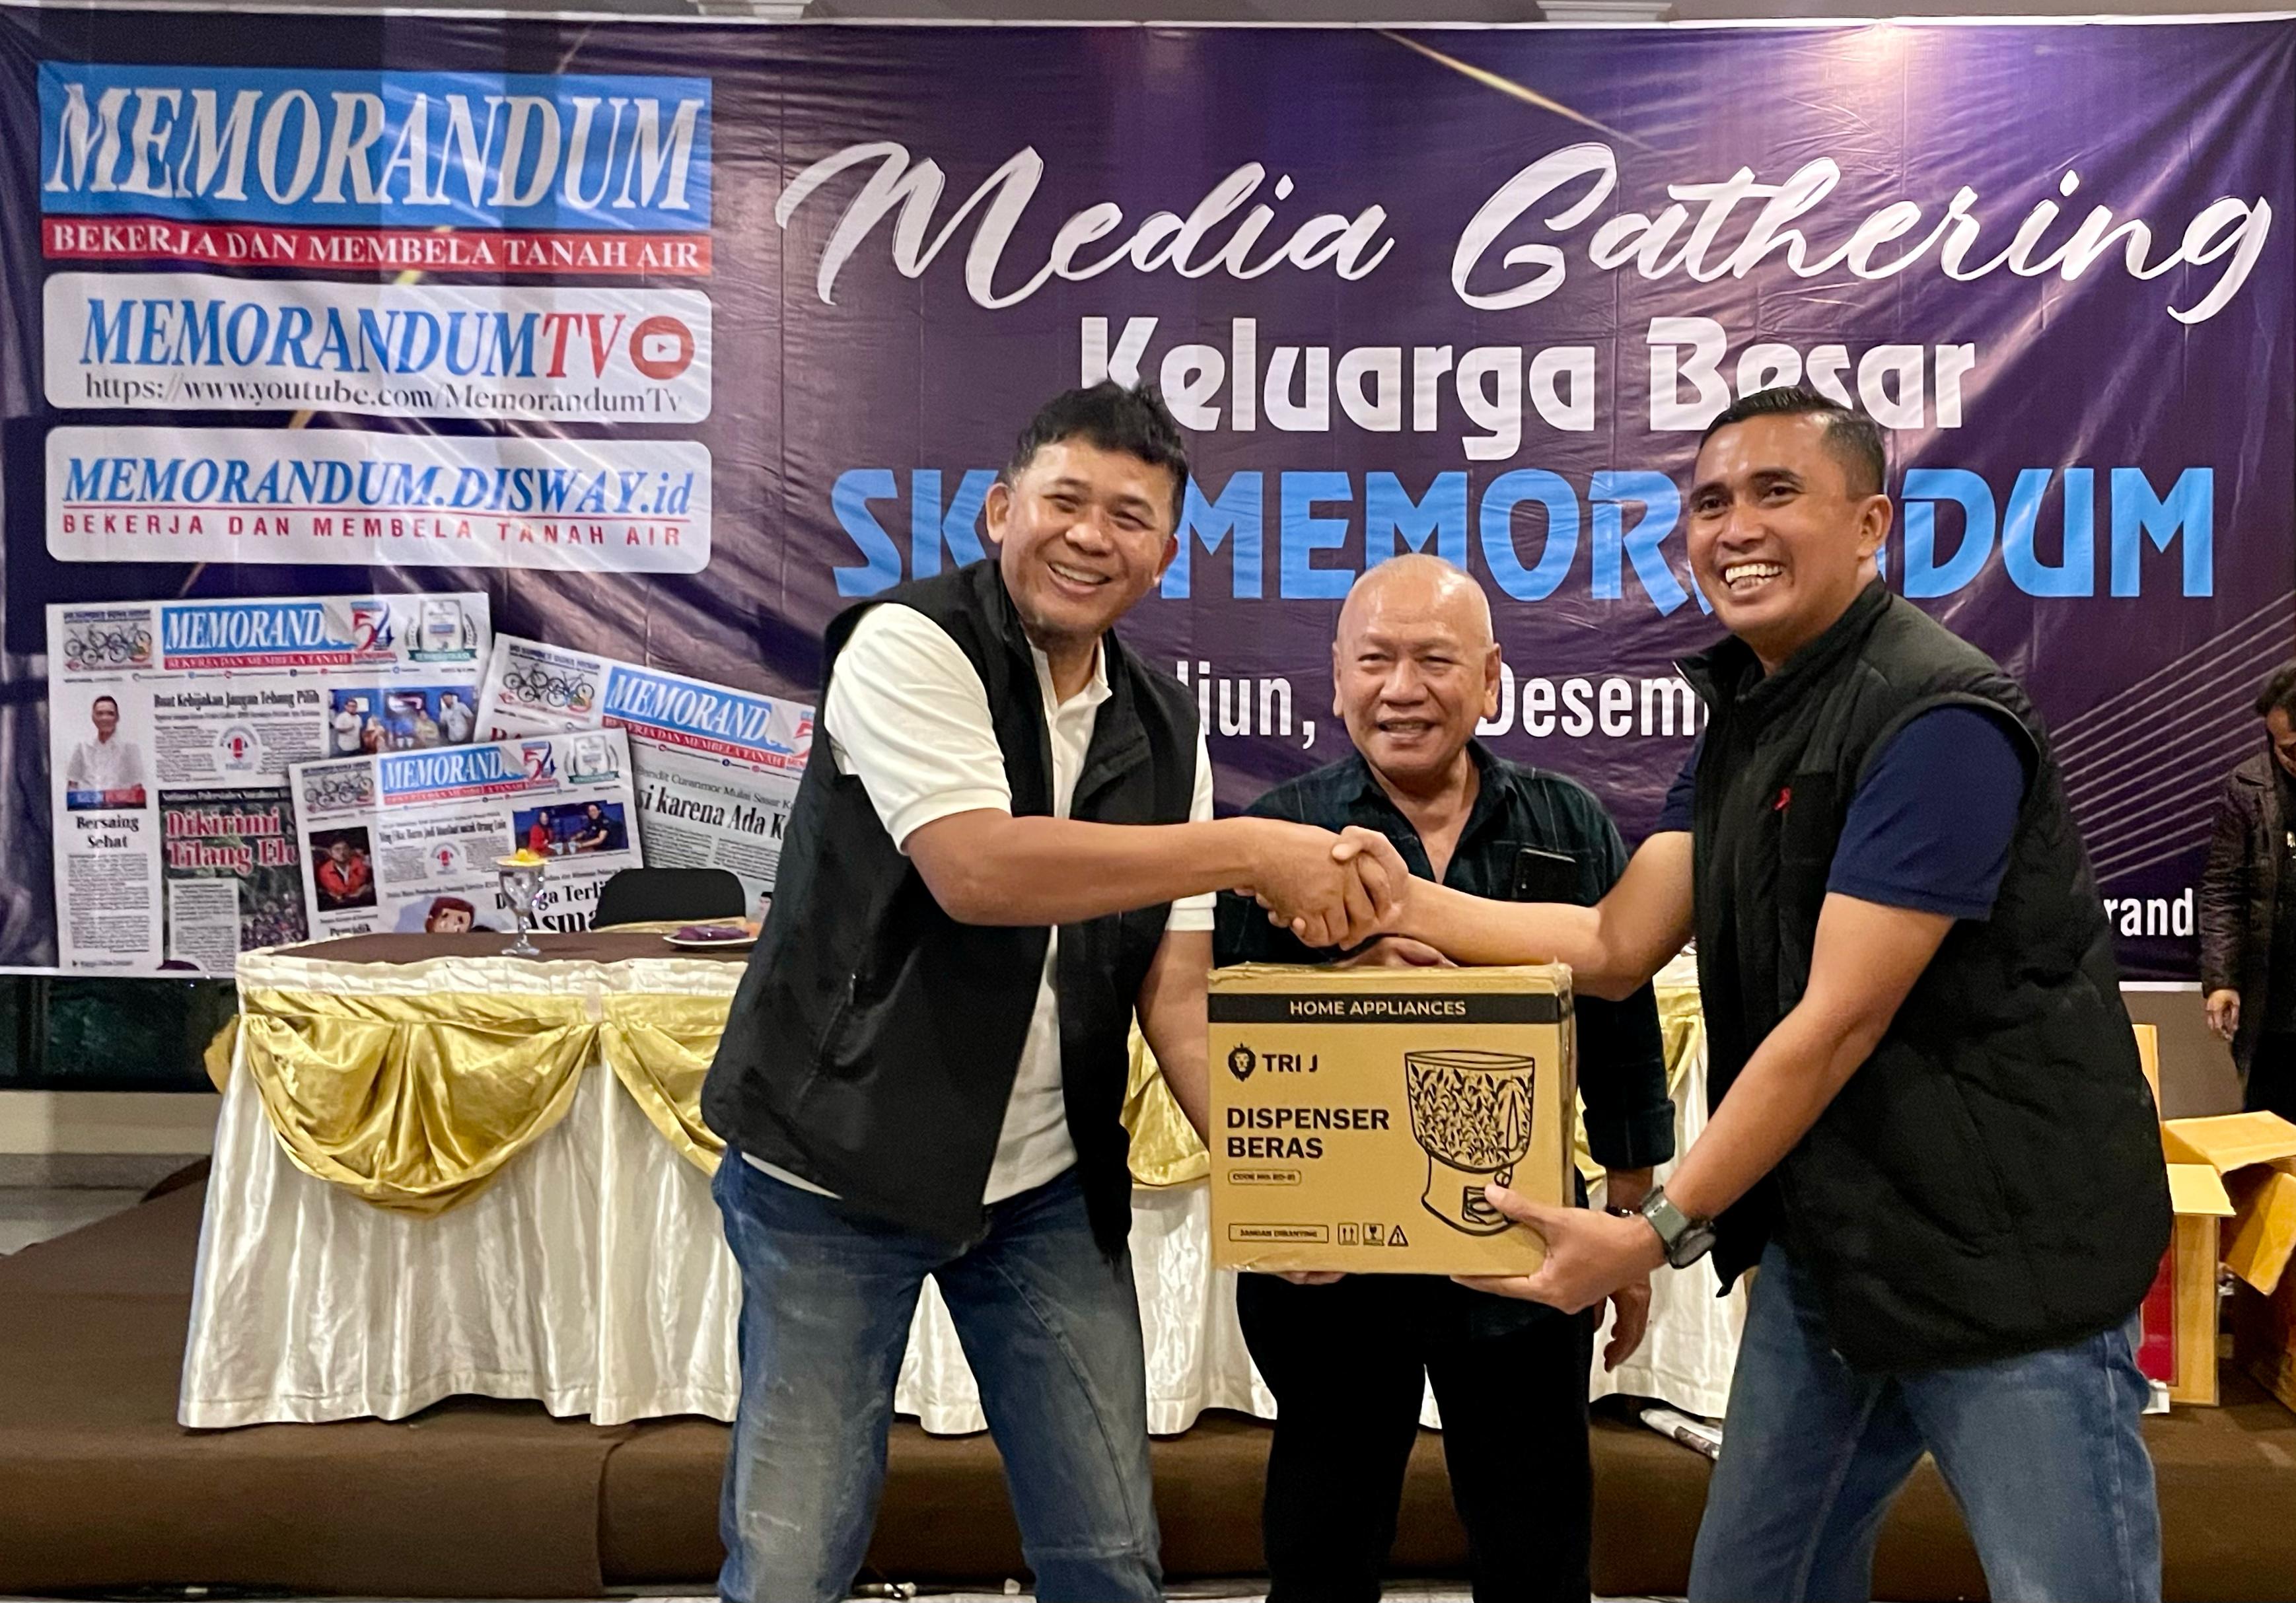 Media Gathering Keluarga Besar SKH Memorandum Ajang Kekompakan dan Lebih Solid